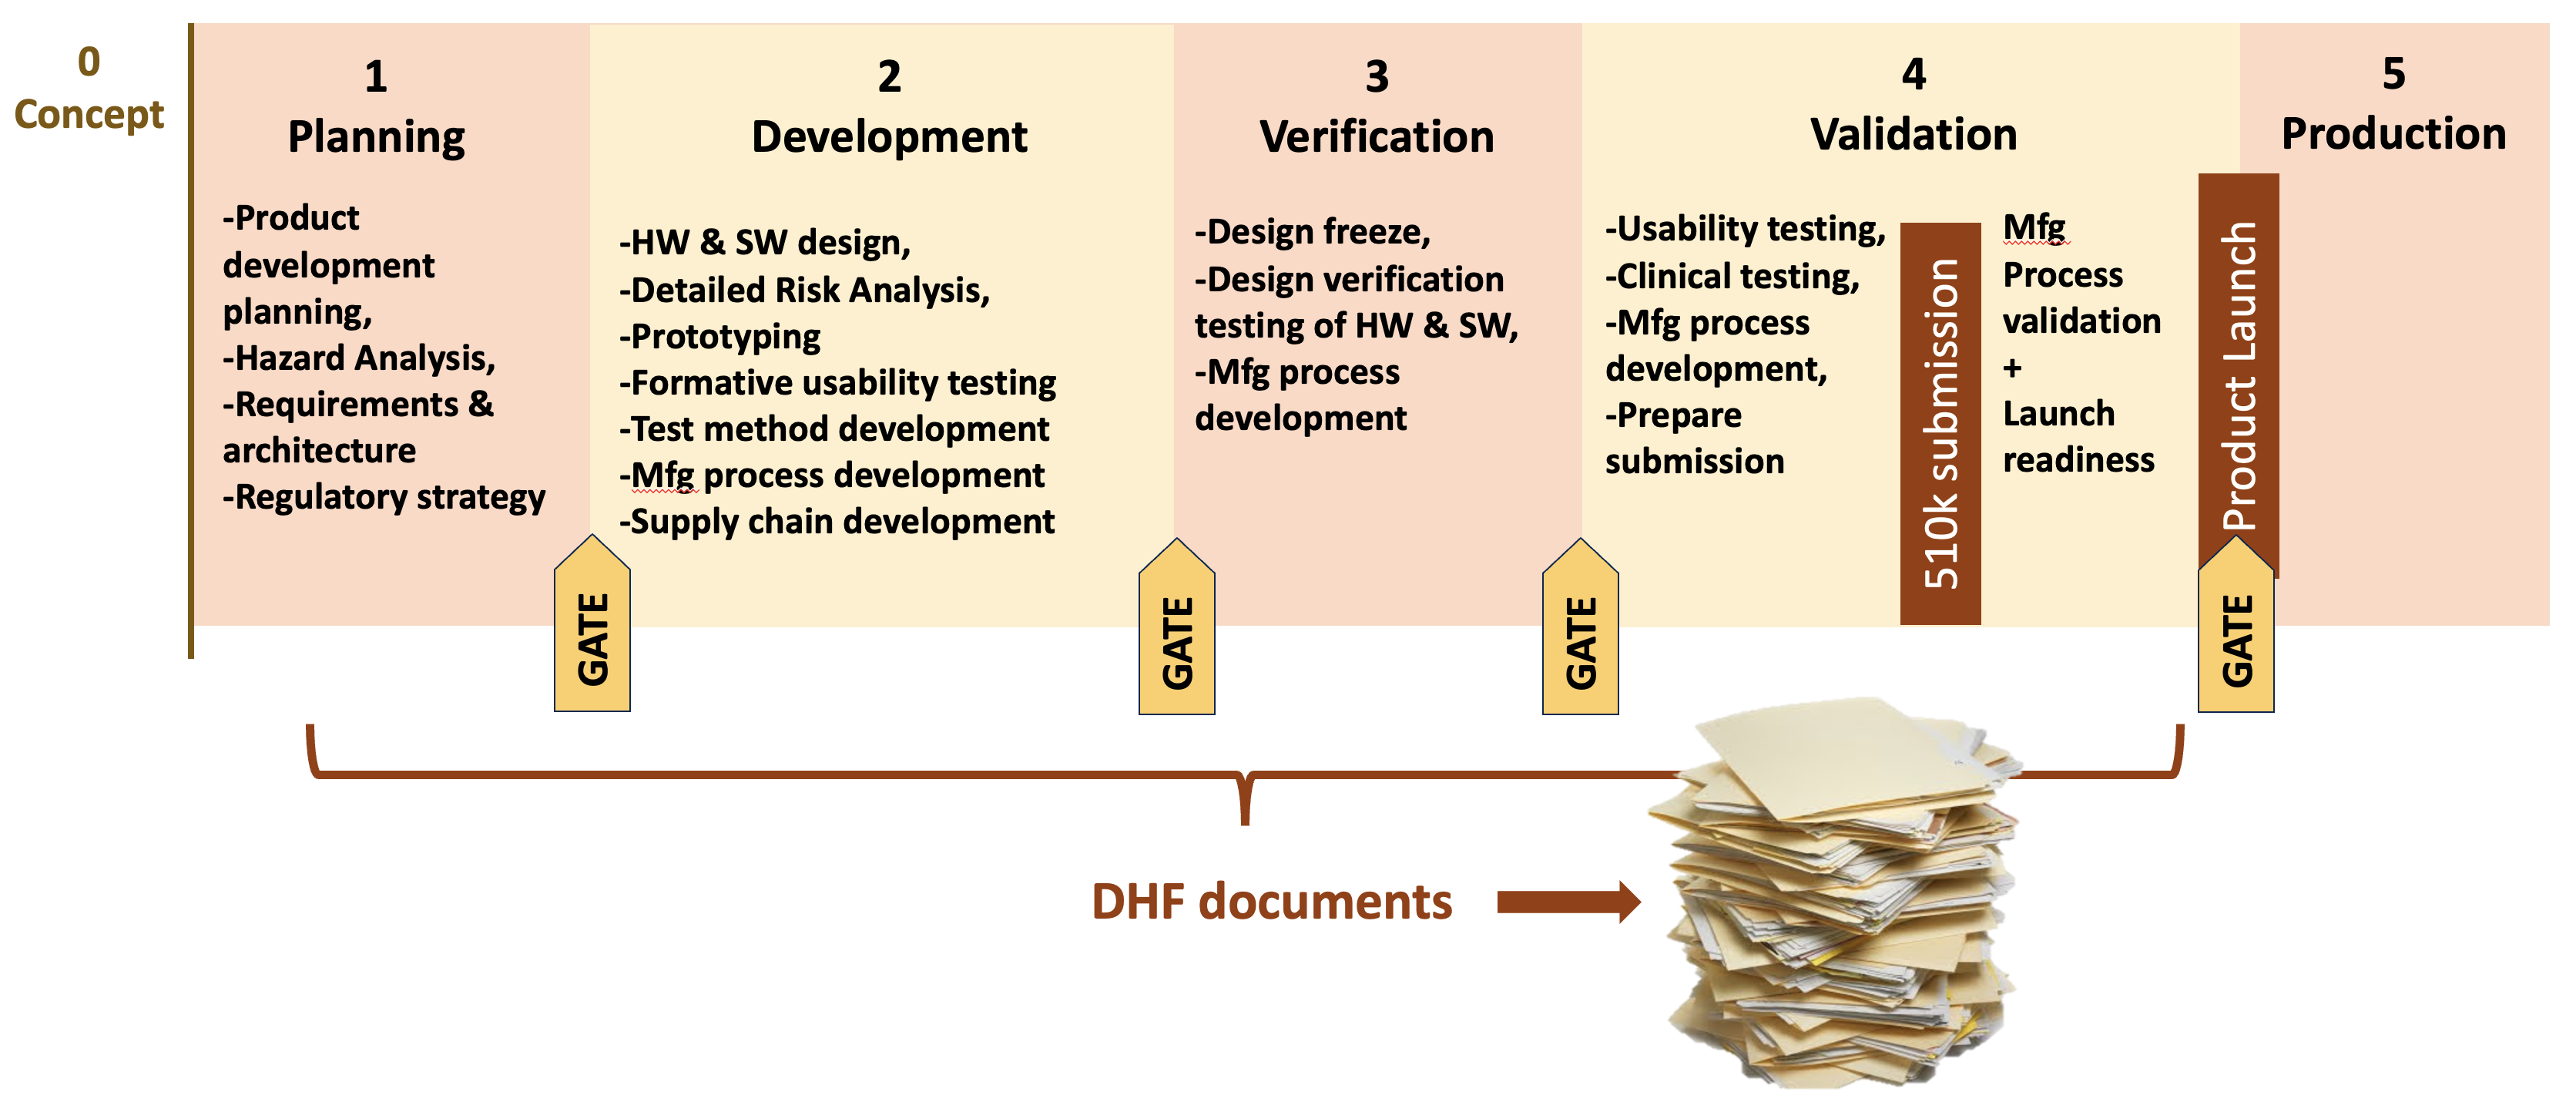 Phase-gate framework for medical device design controls